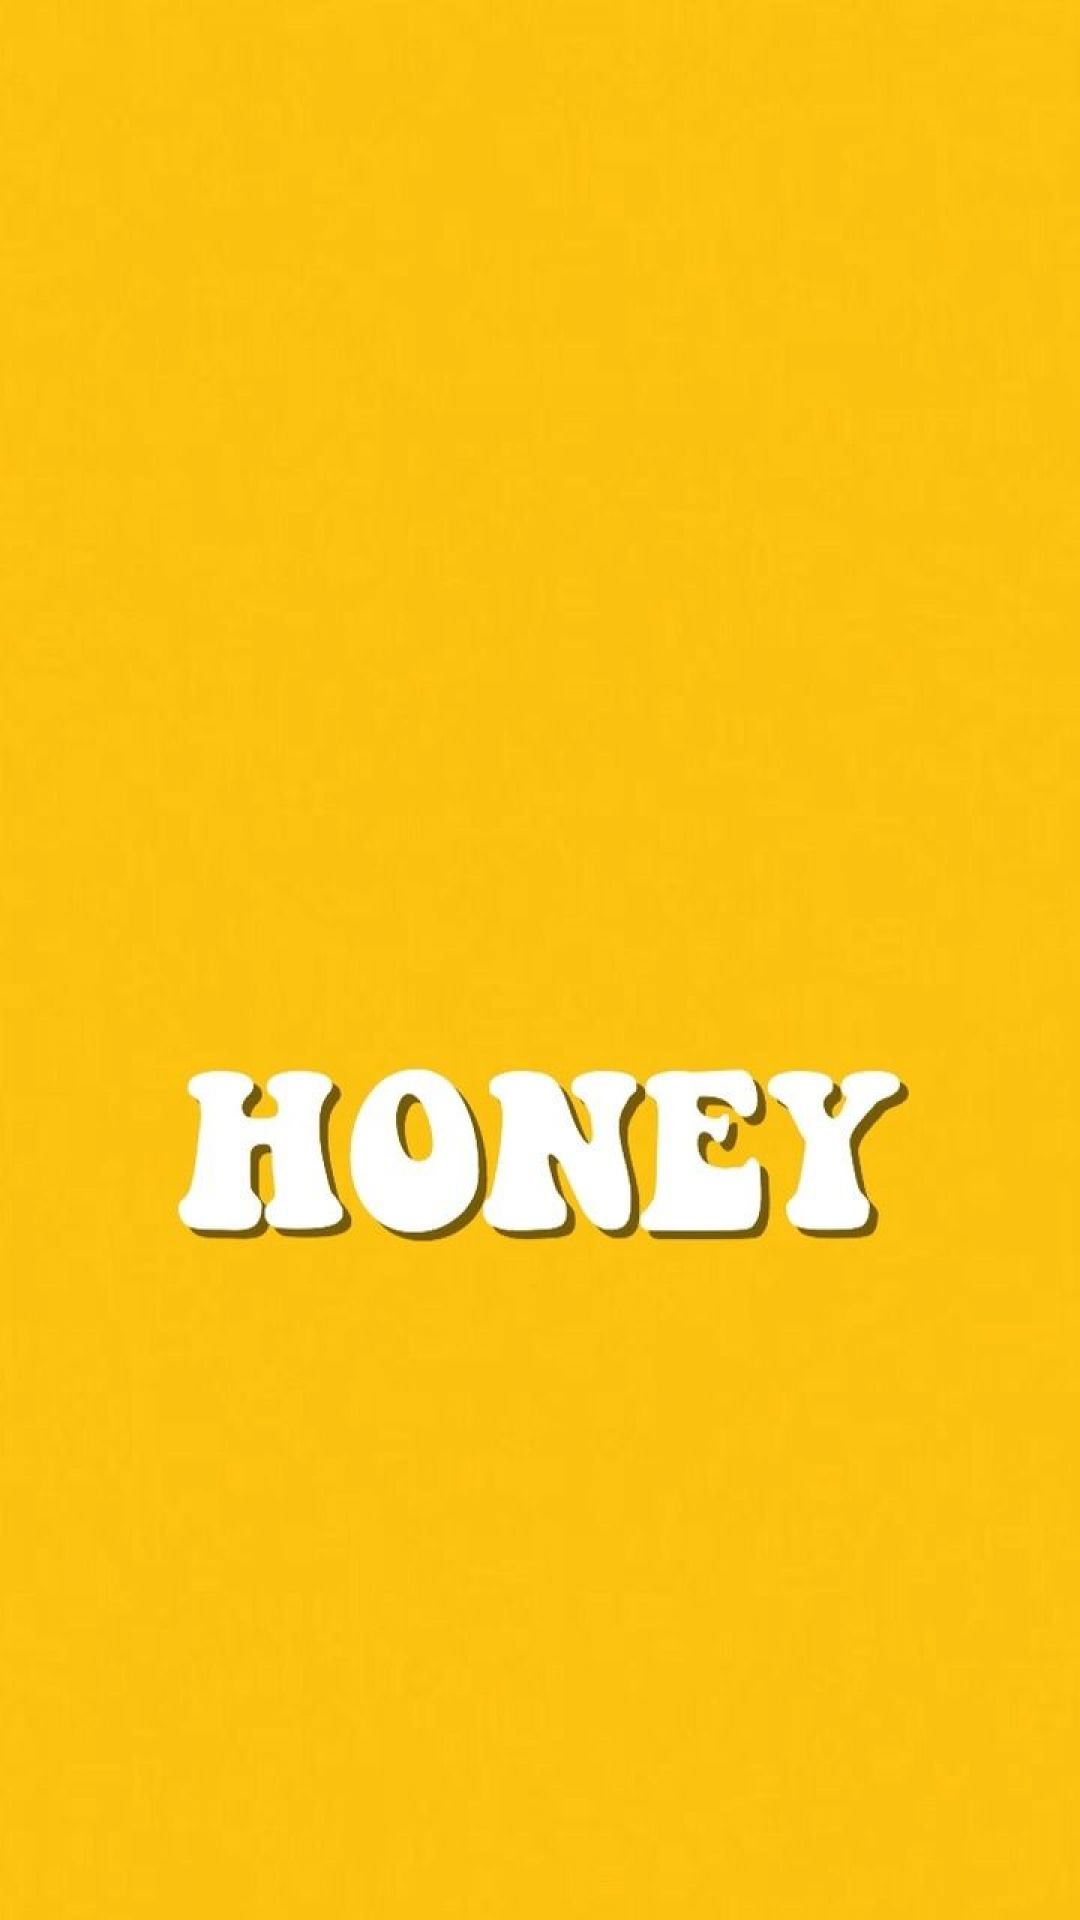 Yellow Honey Wallpaper Free Yellow Honey Background